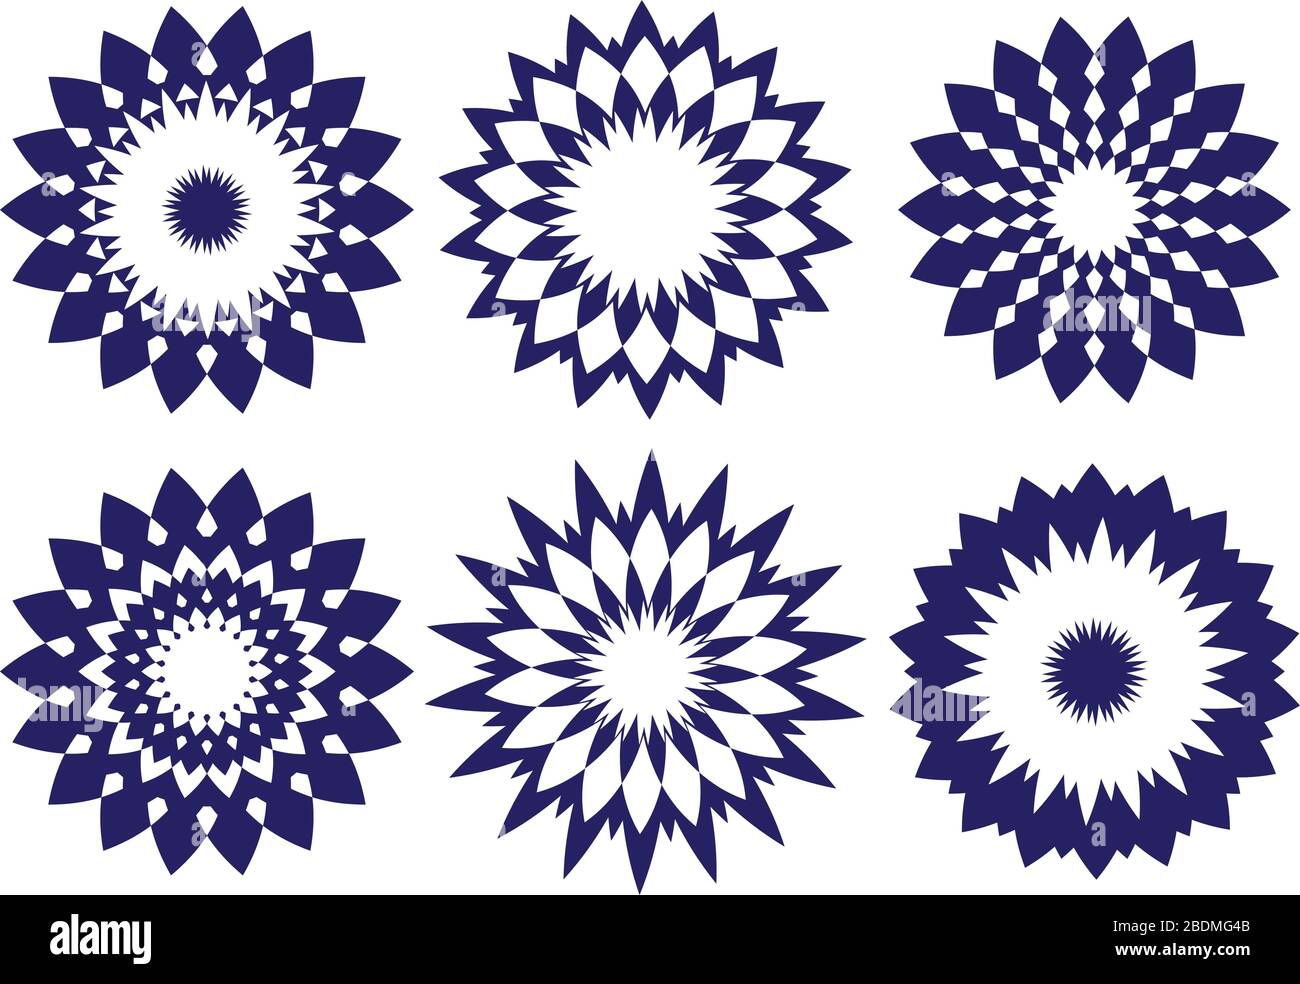 Rundes, abstraktes, kaleidoskopinspiriertes Designelement. Vektormuster in Mitternachtsblau isoliert auf weißem Hintergrund Stock Vektor